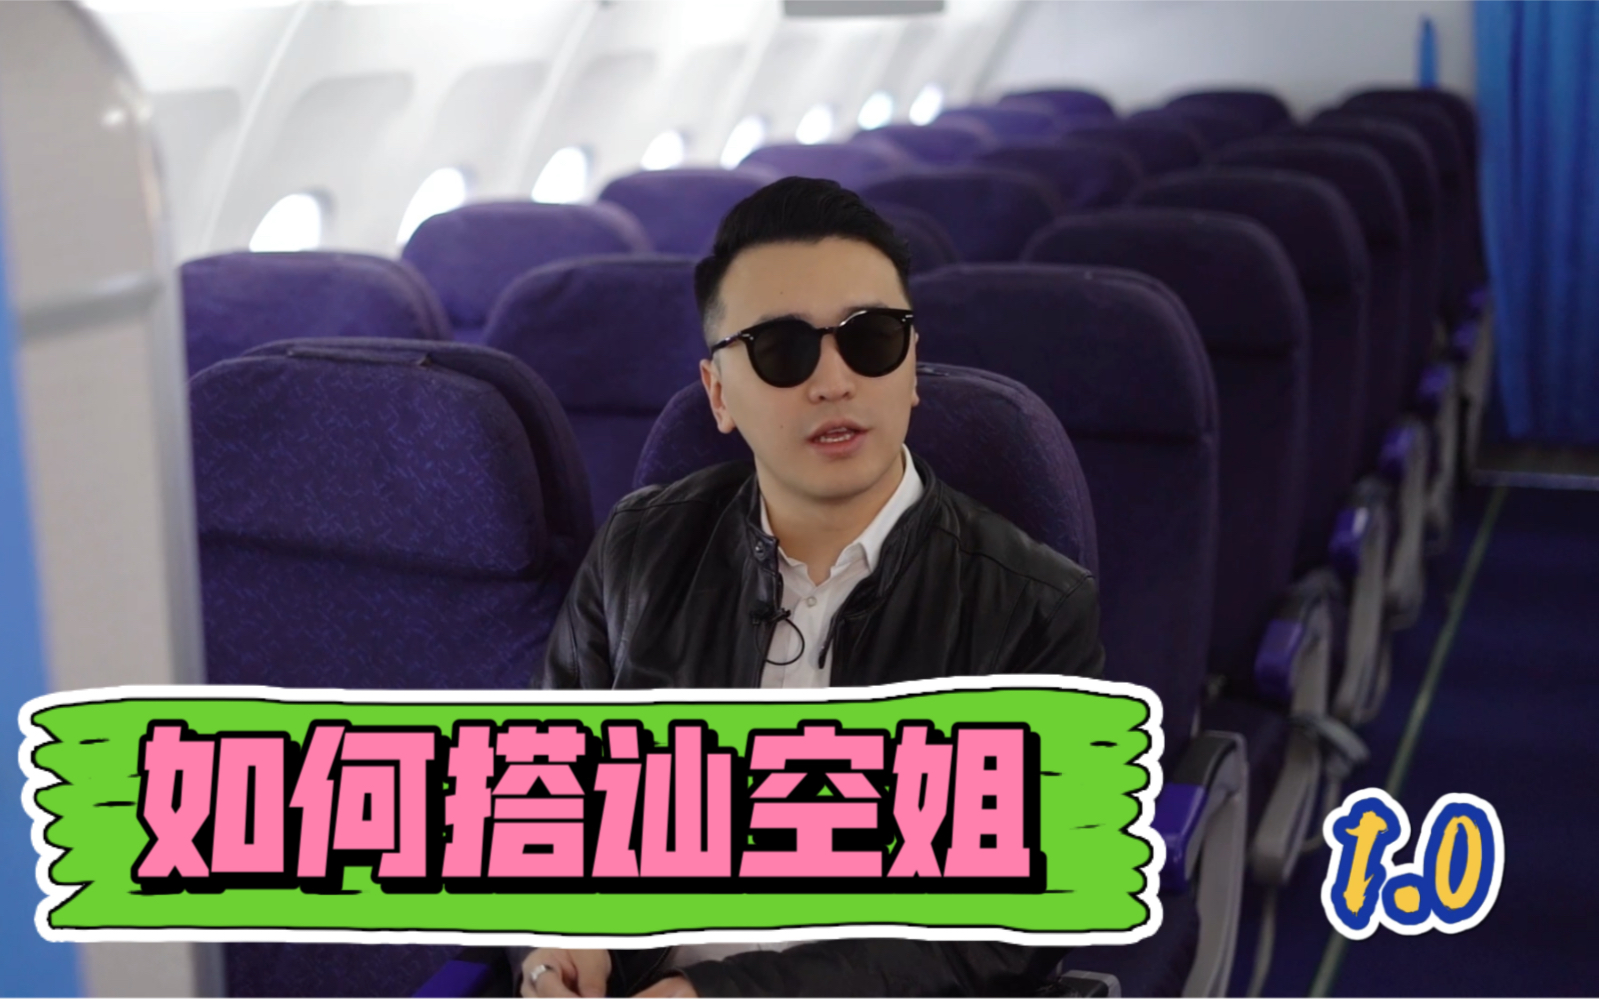 微笑的空姐拿着机票-蓝牛仔影像-中国原创广告影像素材